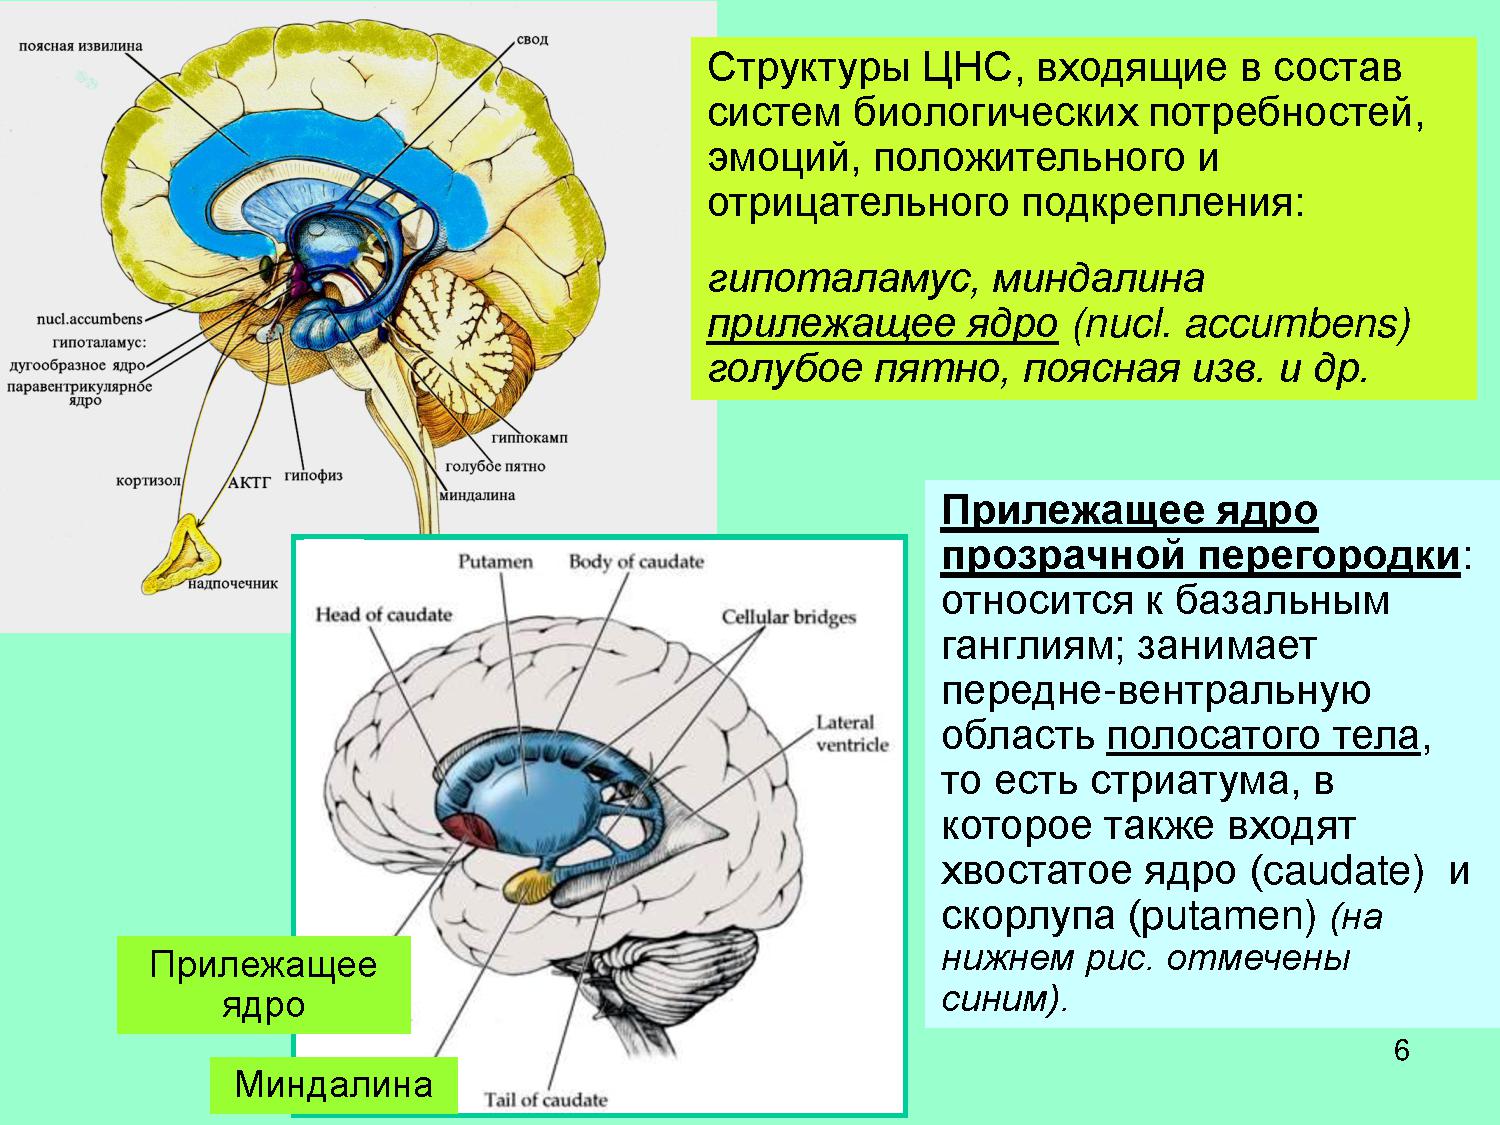 Входит в состав других систем. Прилежащее ядро головного мозга. Прилежащее ядро прозрачной перегородки. Хвостатое ядро мозга строение. Функции хвостатого ядра головного мозга.